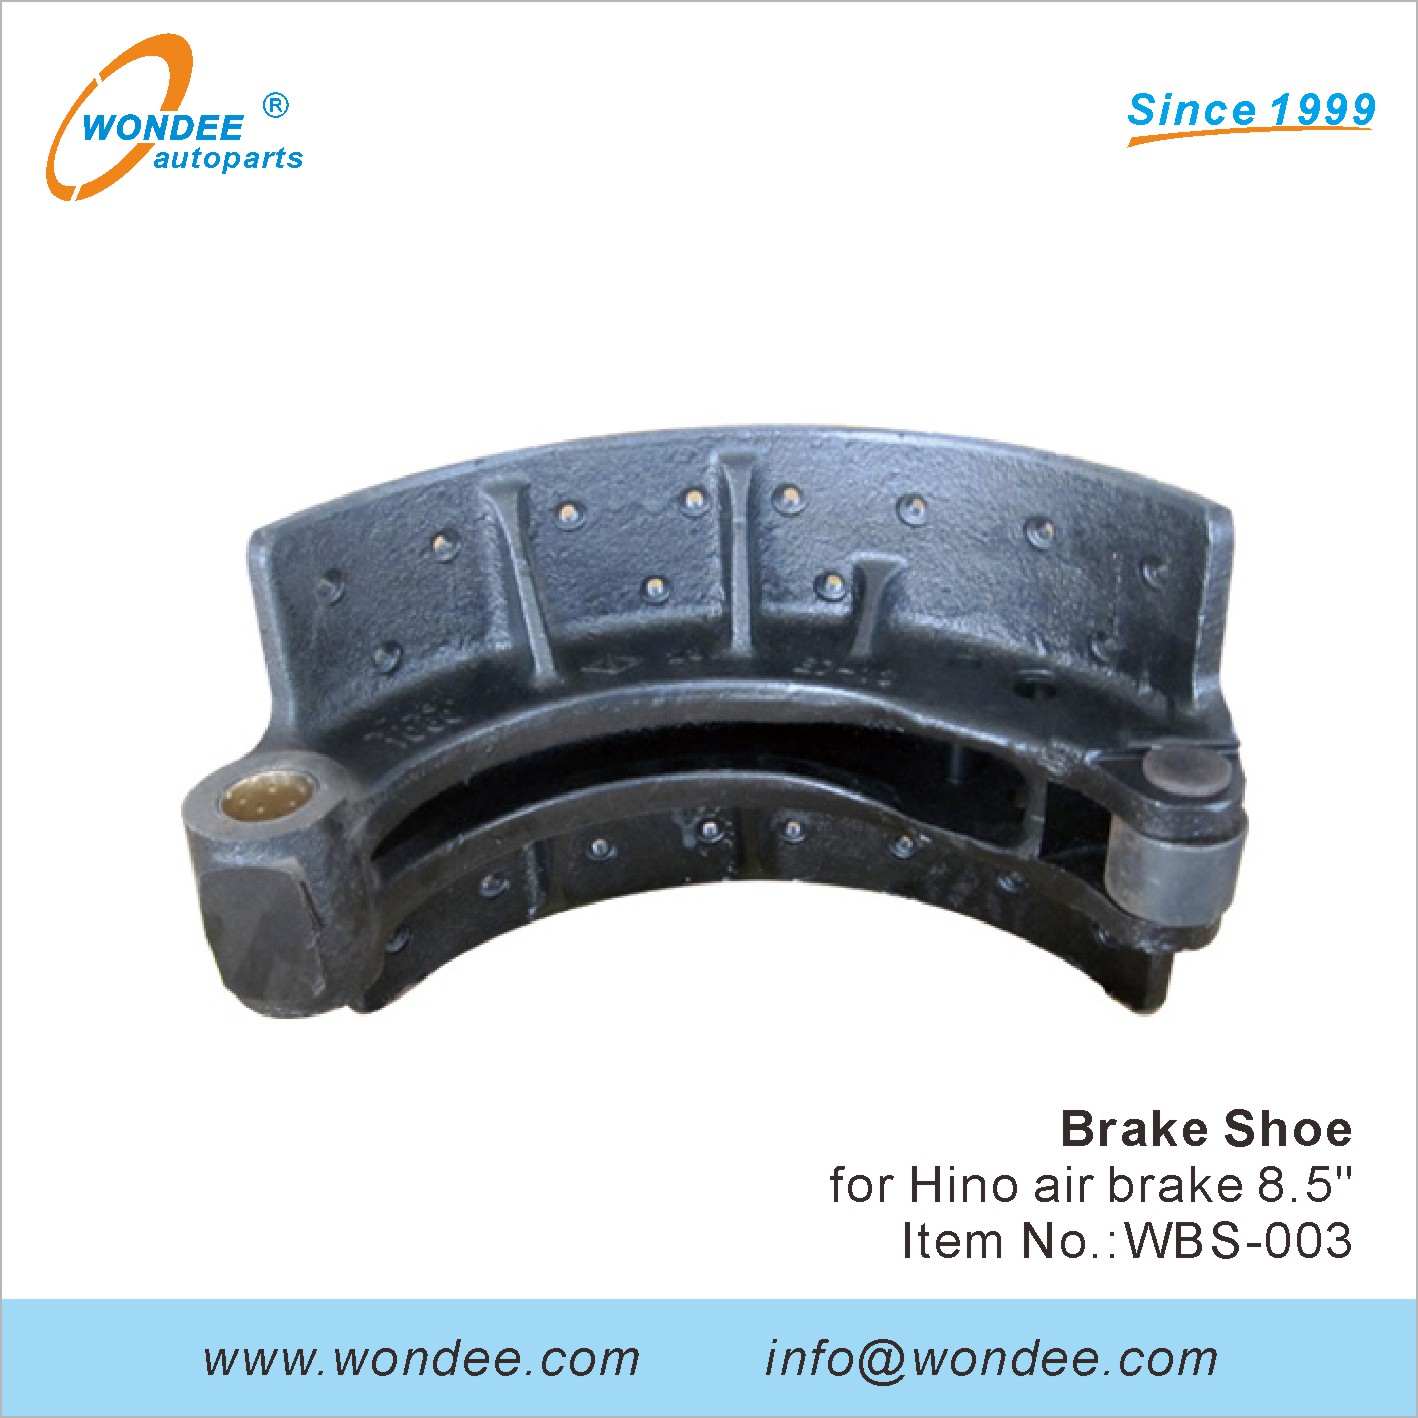 WONDEE brake shoe (3)